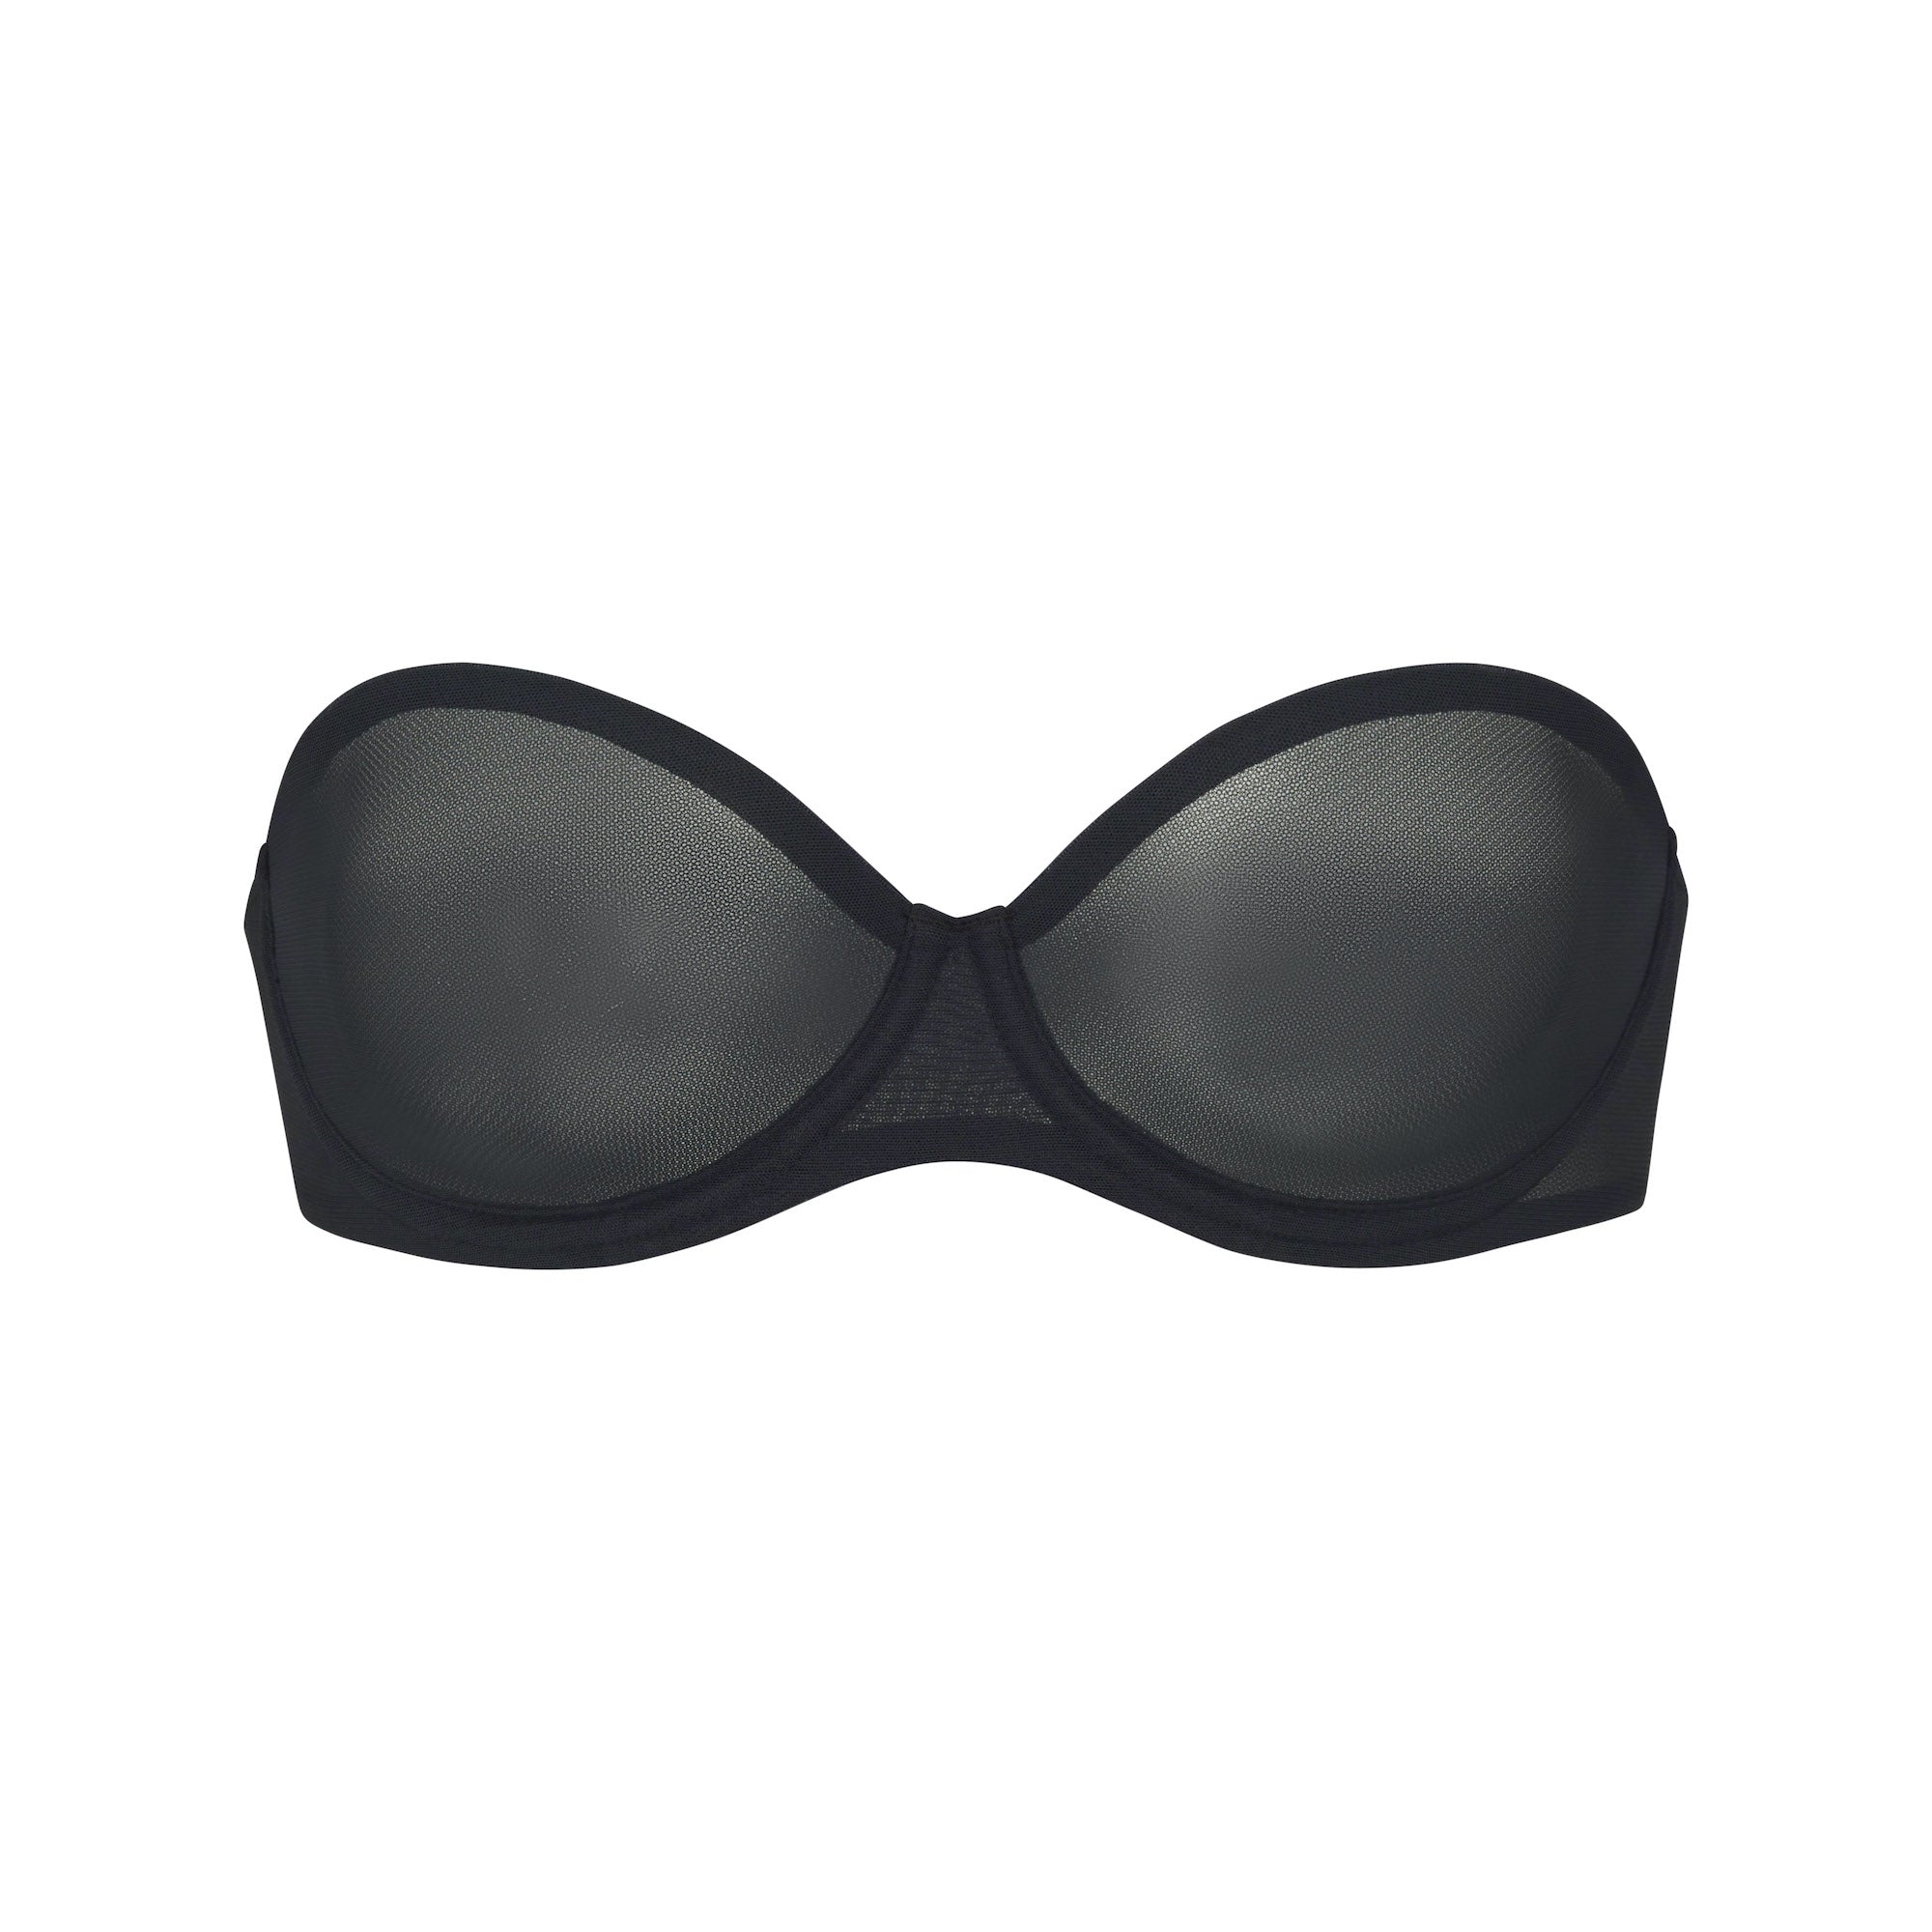 Skims ultra fine mesh strapless bra 🤍 34D - comes